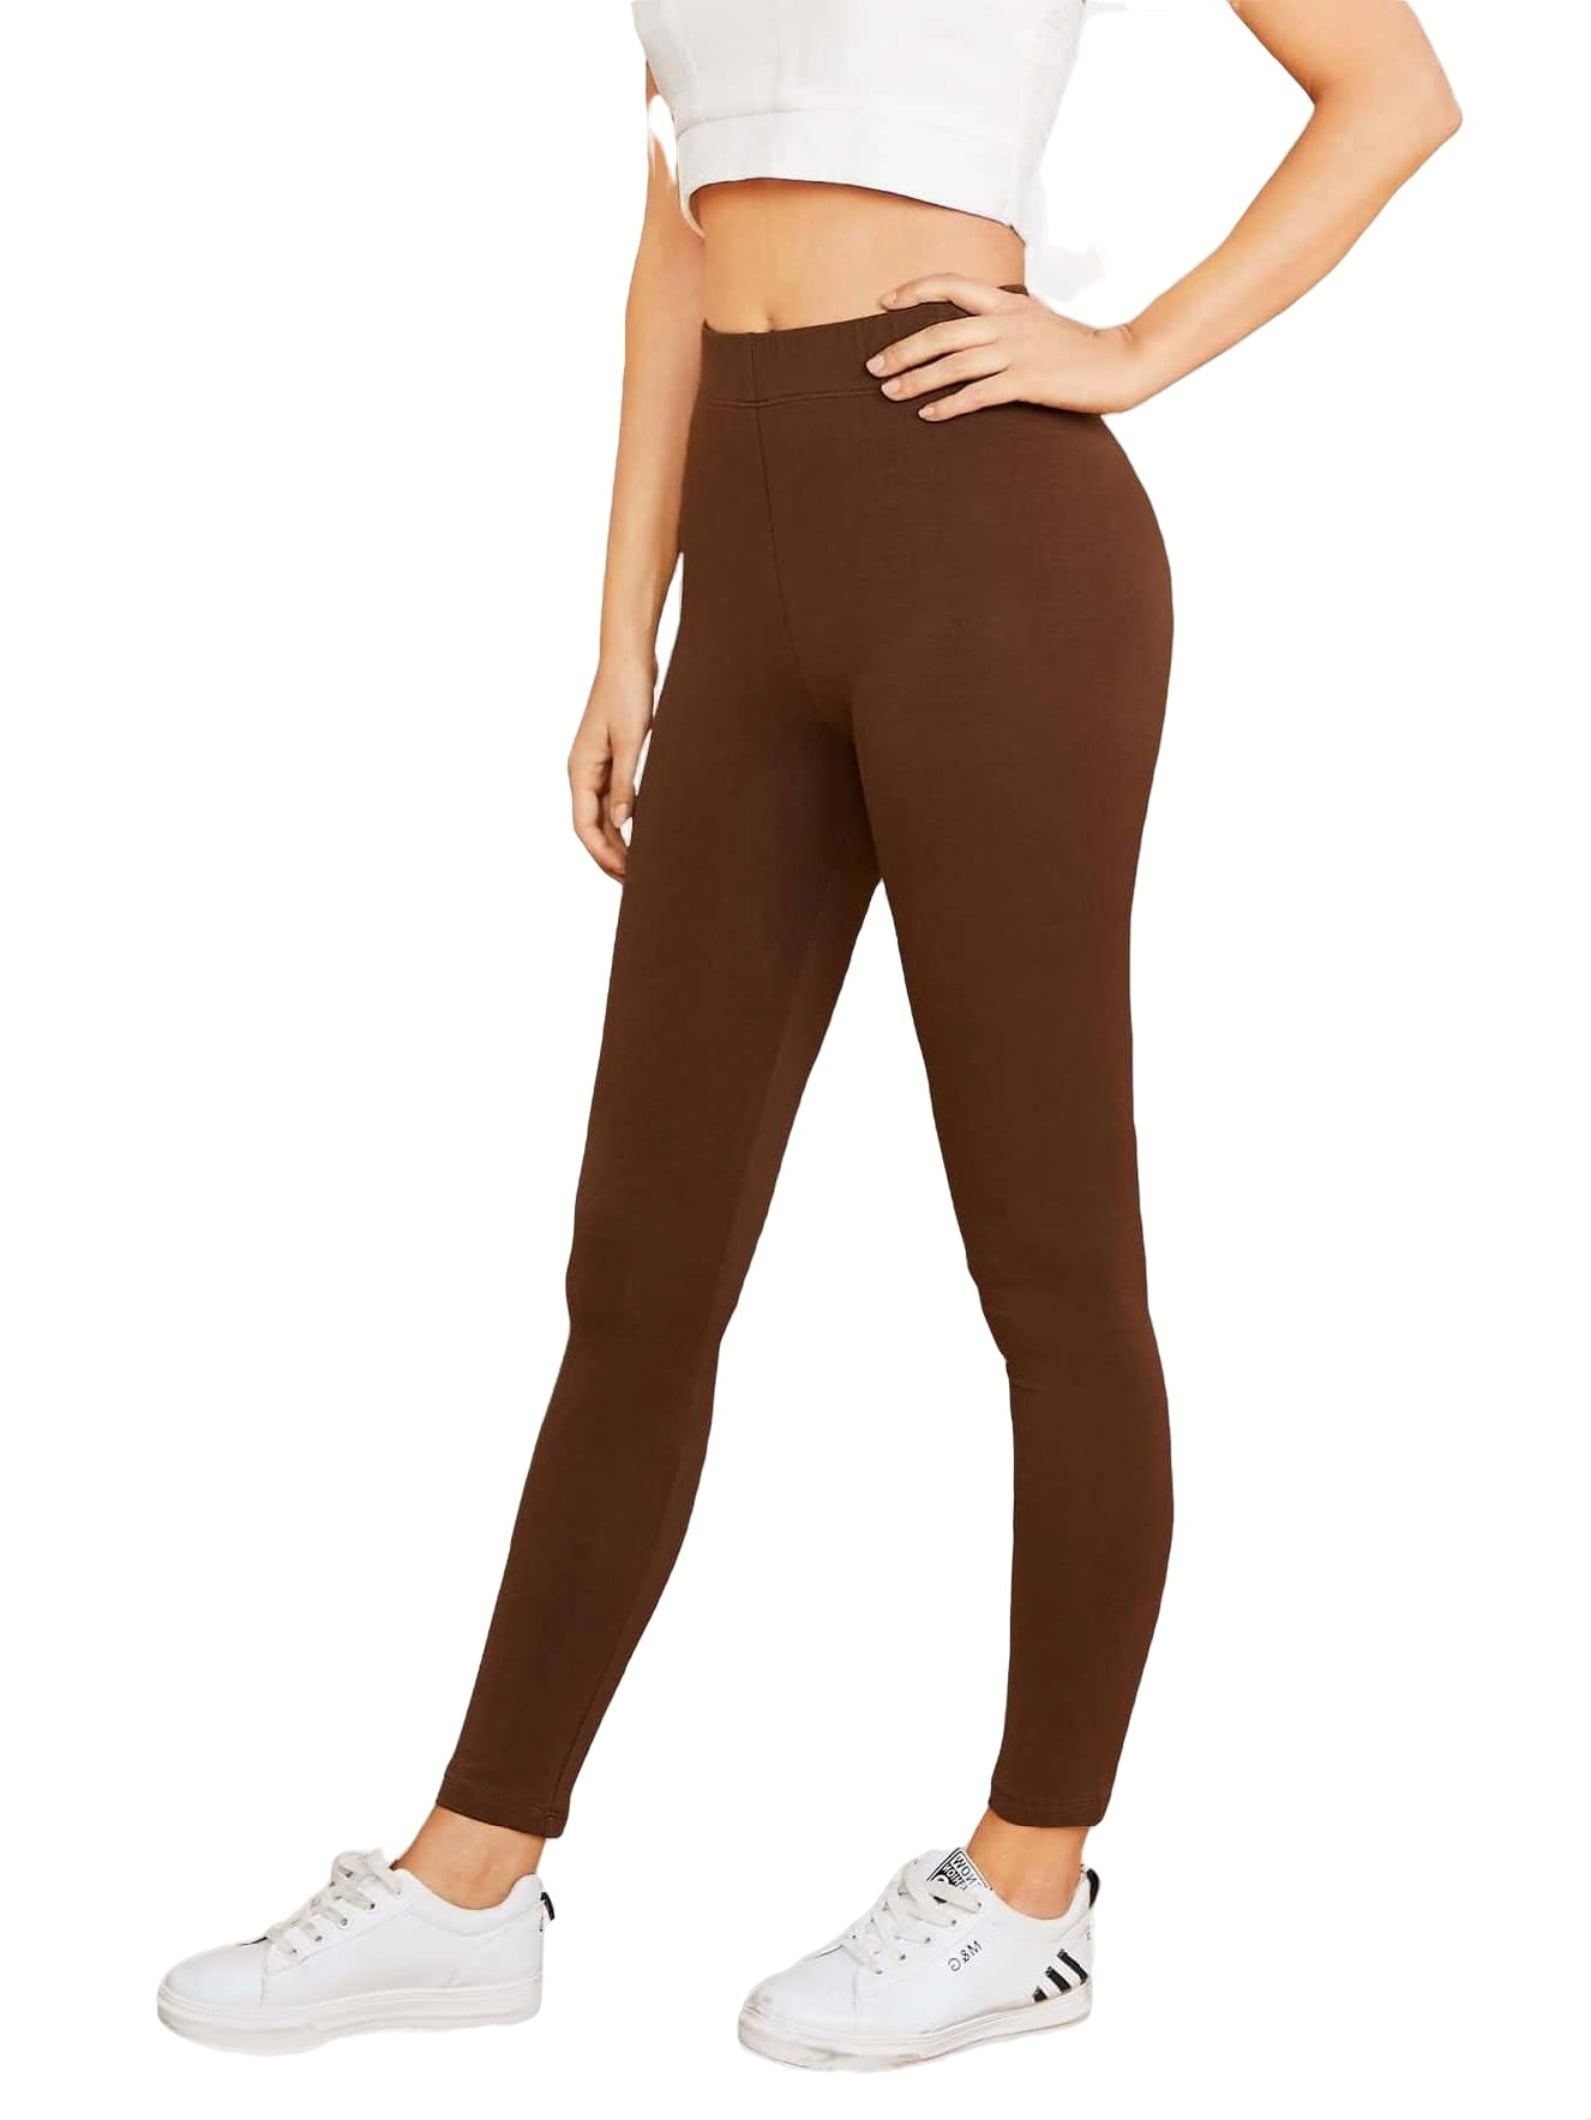 Women's Casual Plain Regular Chocolate Brown Leggings M 